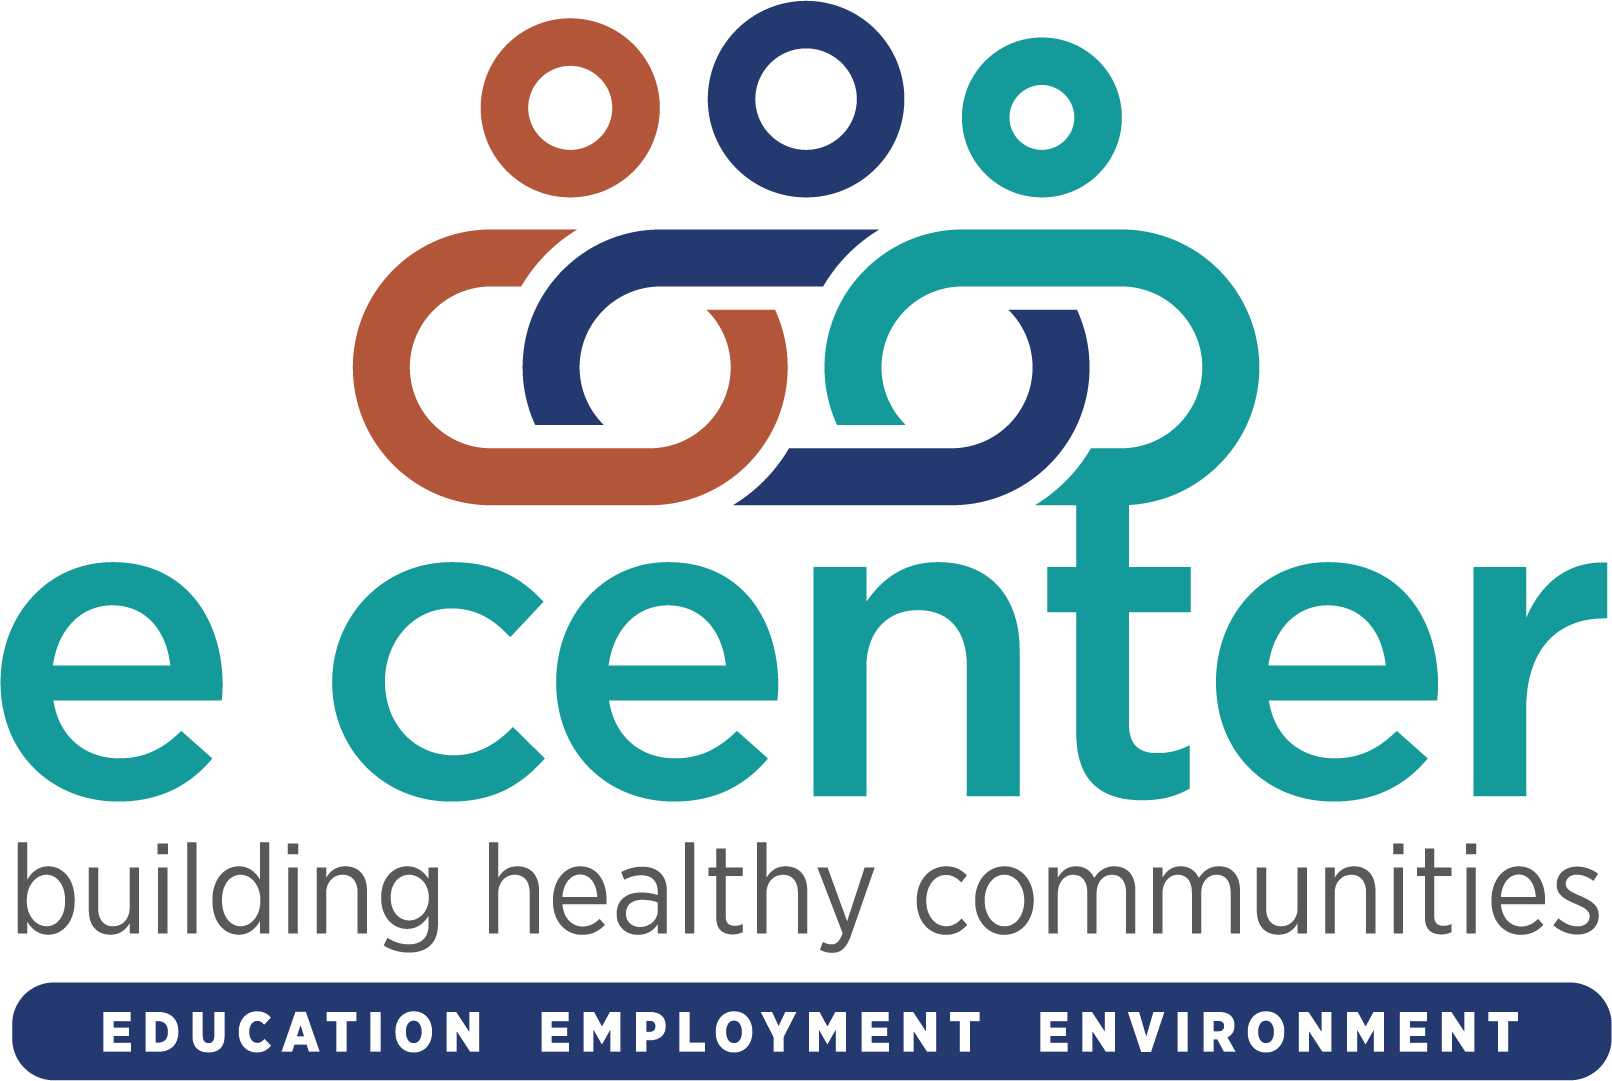 E Center logo